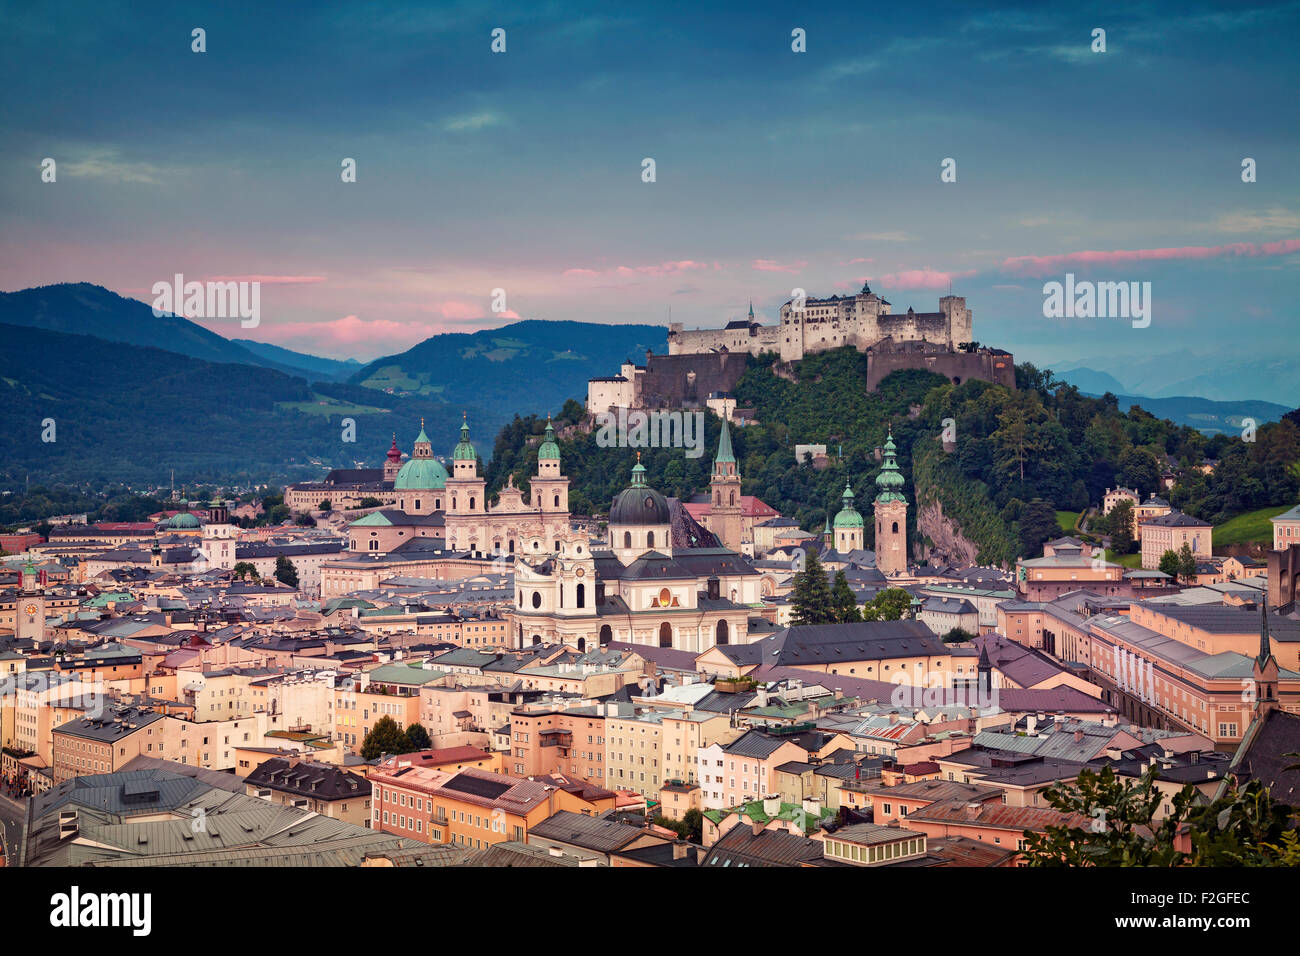 Salzburg, Austria. Image of Salzburg during twilight dramatic sunrise. Stock Photo